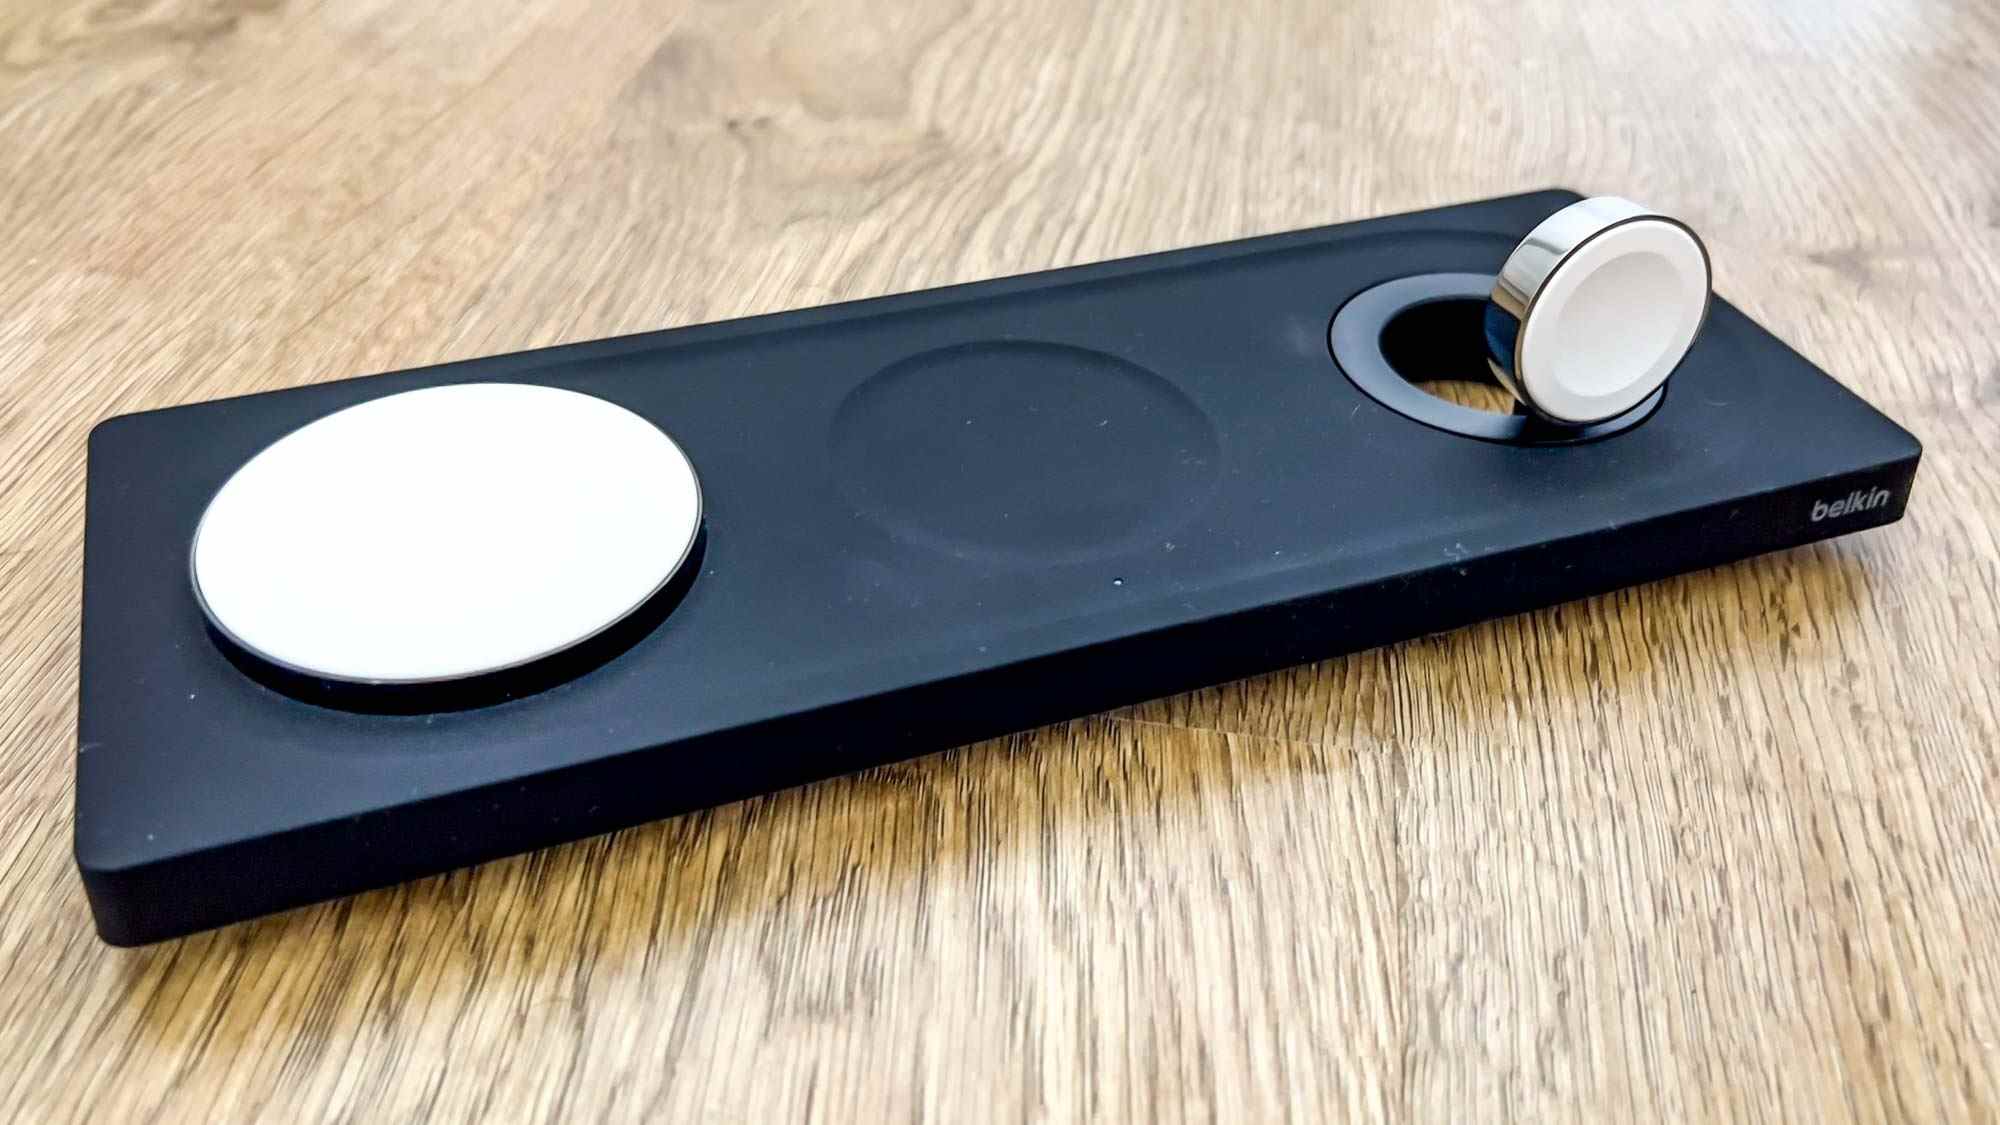 Le chargeur sans fil Belkin BoostCharge Pro 3-en-1 avec MagSafe en noir sur une surface en bois